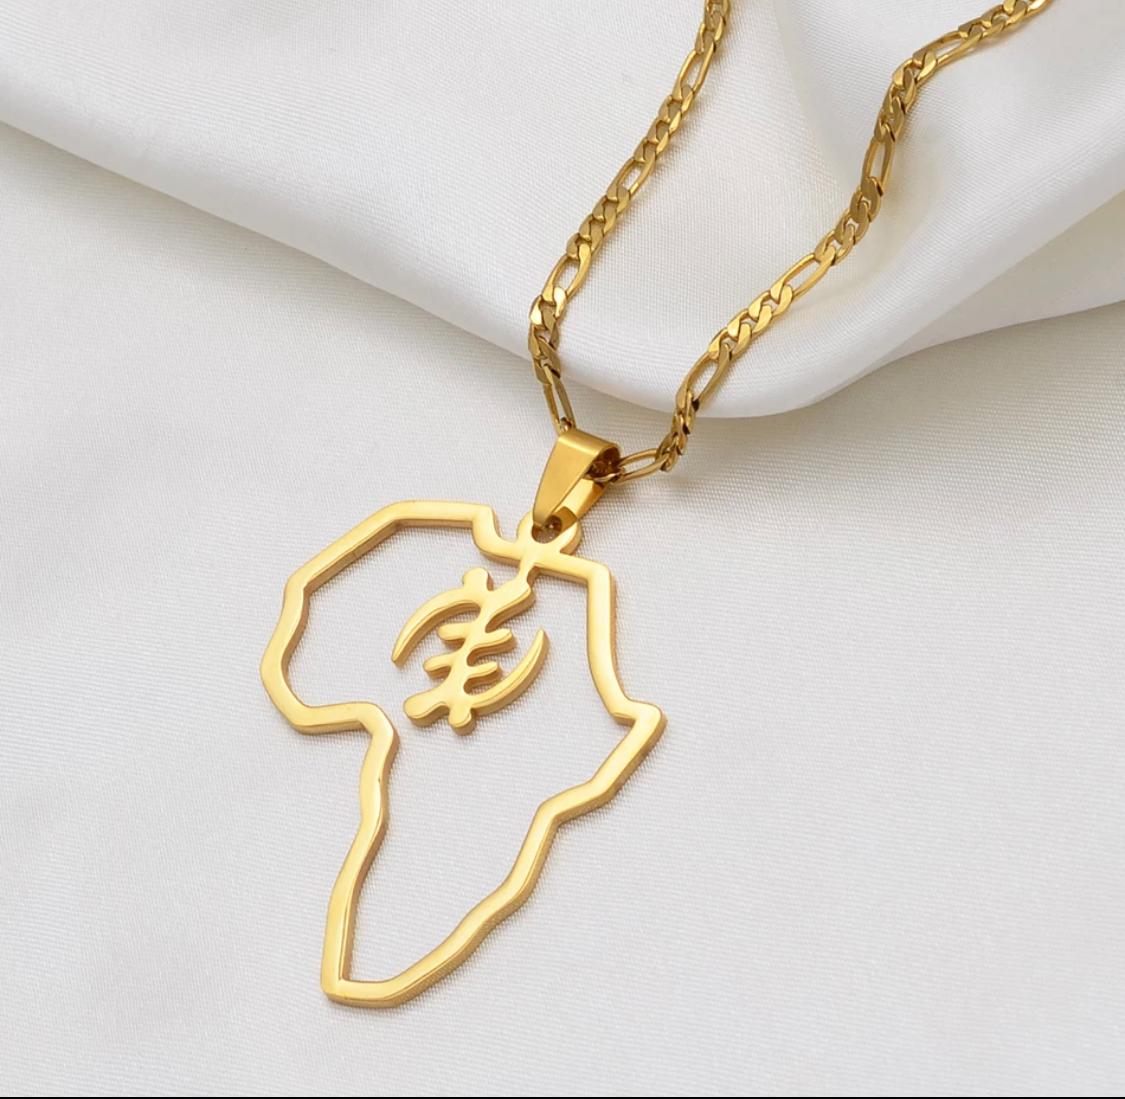 Patterned Solid Gold Africa Pendant - Afrogem Jewellers